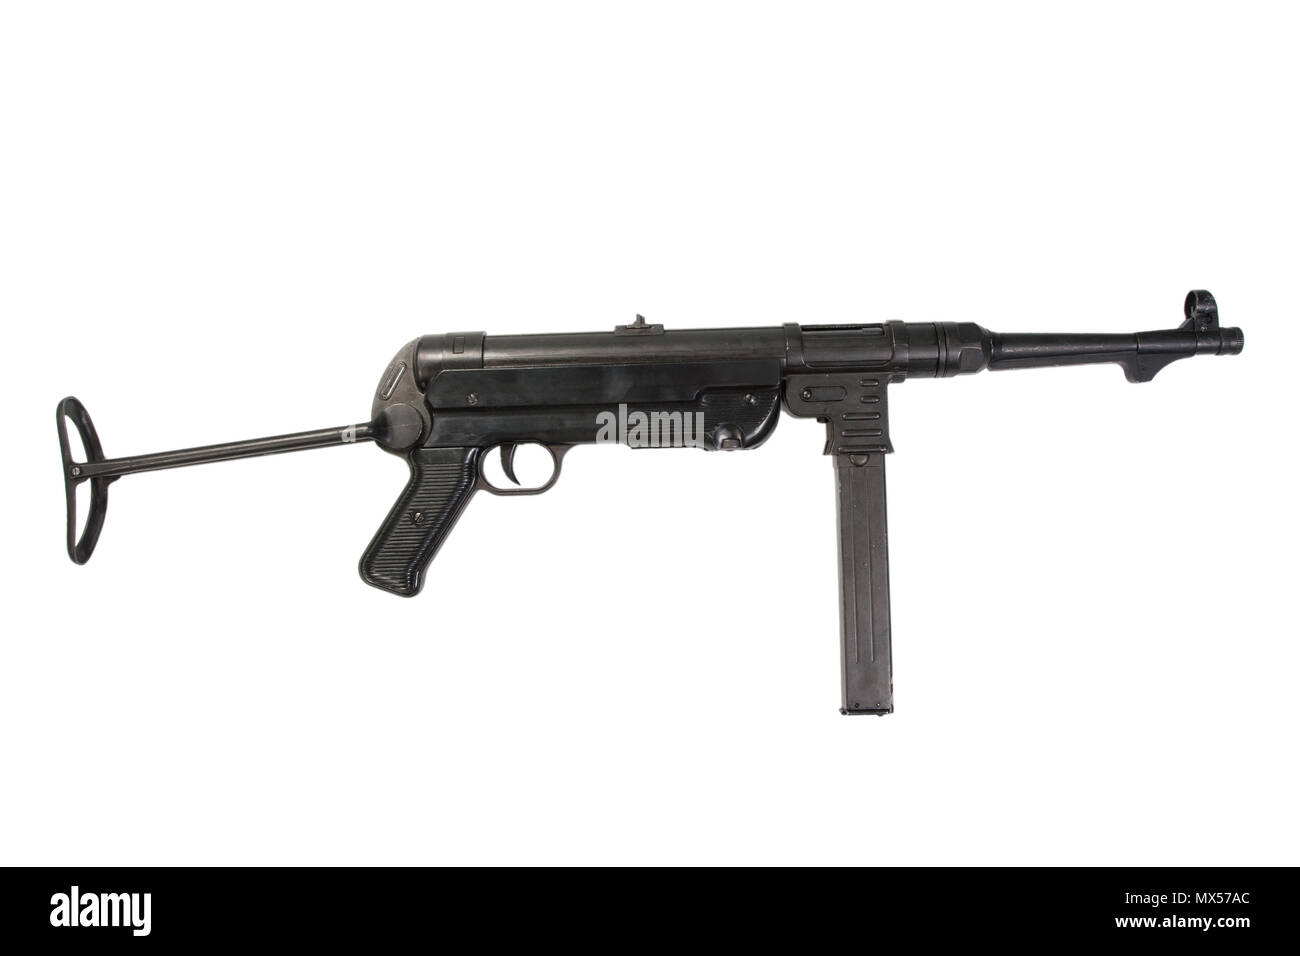 MP40 submachine gun on white background Stock Photo